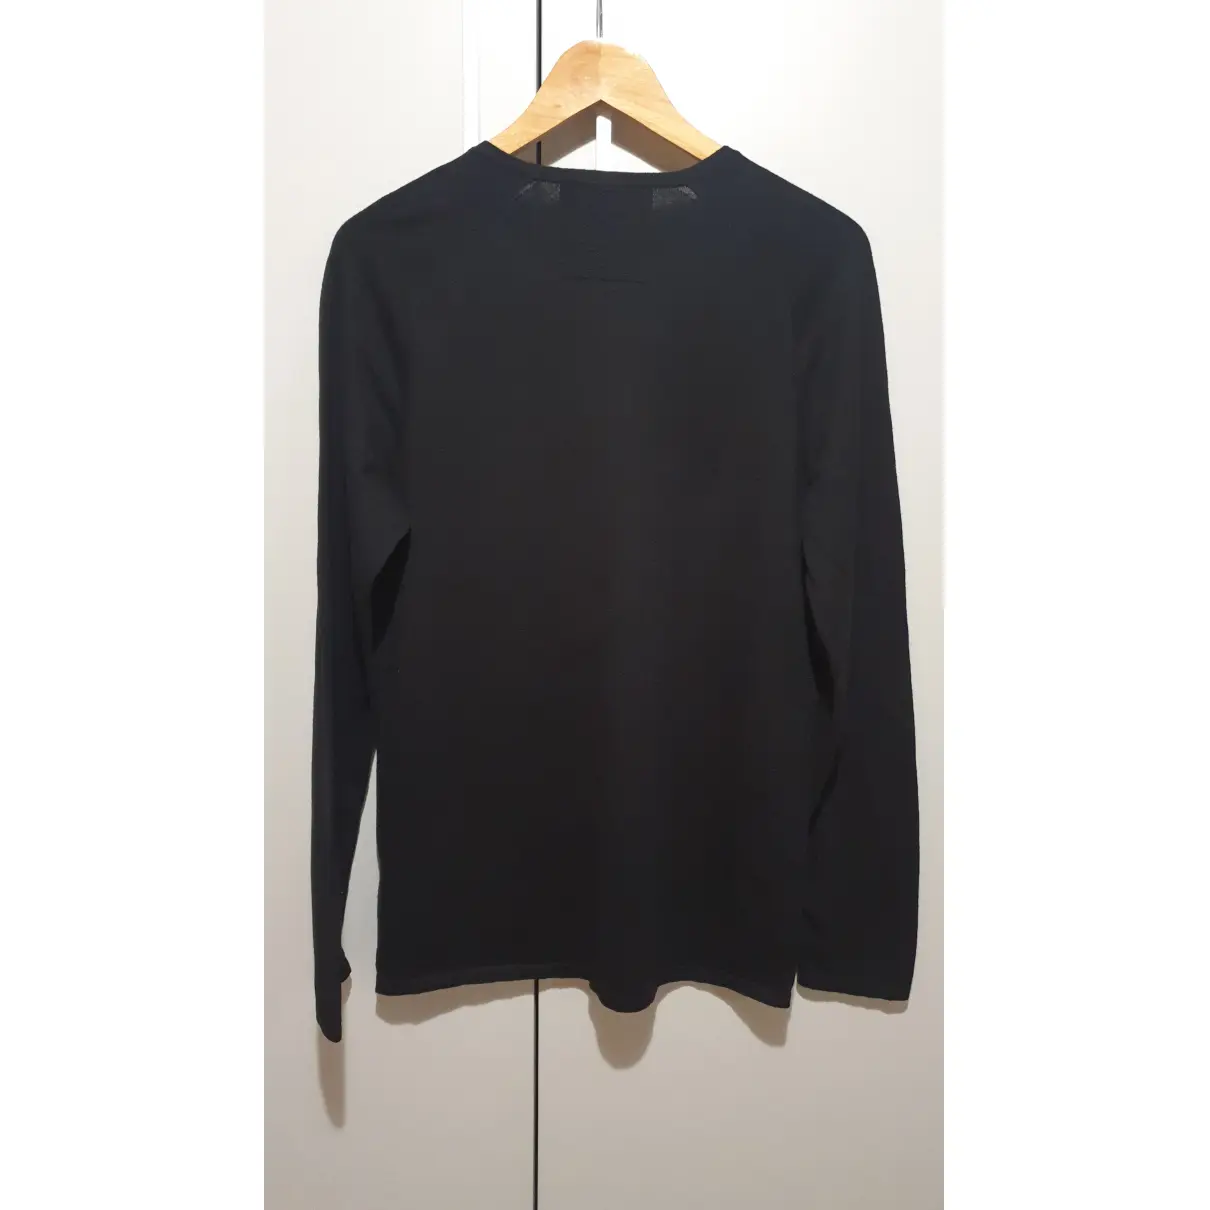 Buy Hugo Boss Black Cotton Knitwear & Sweatshirt online